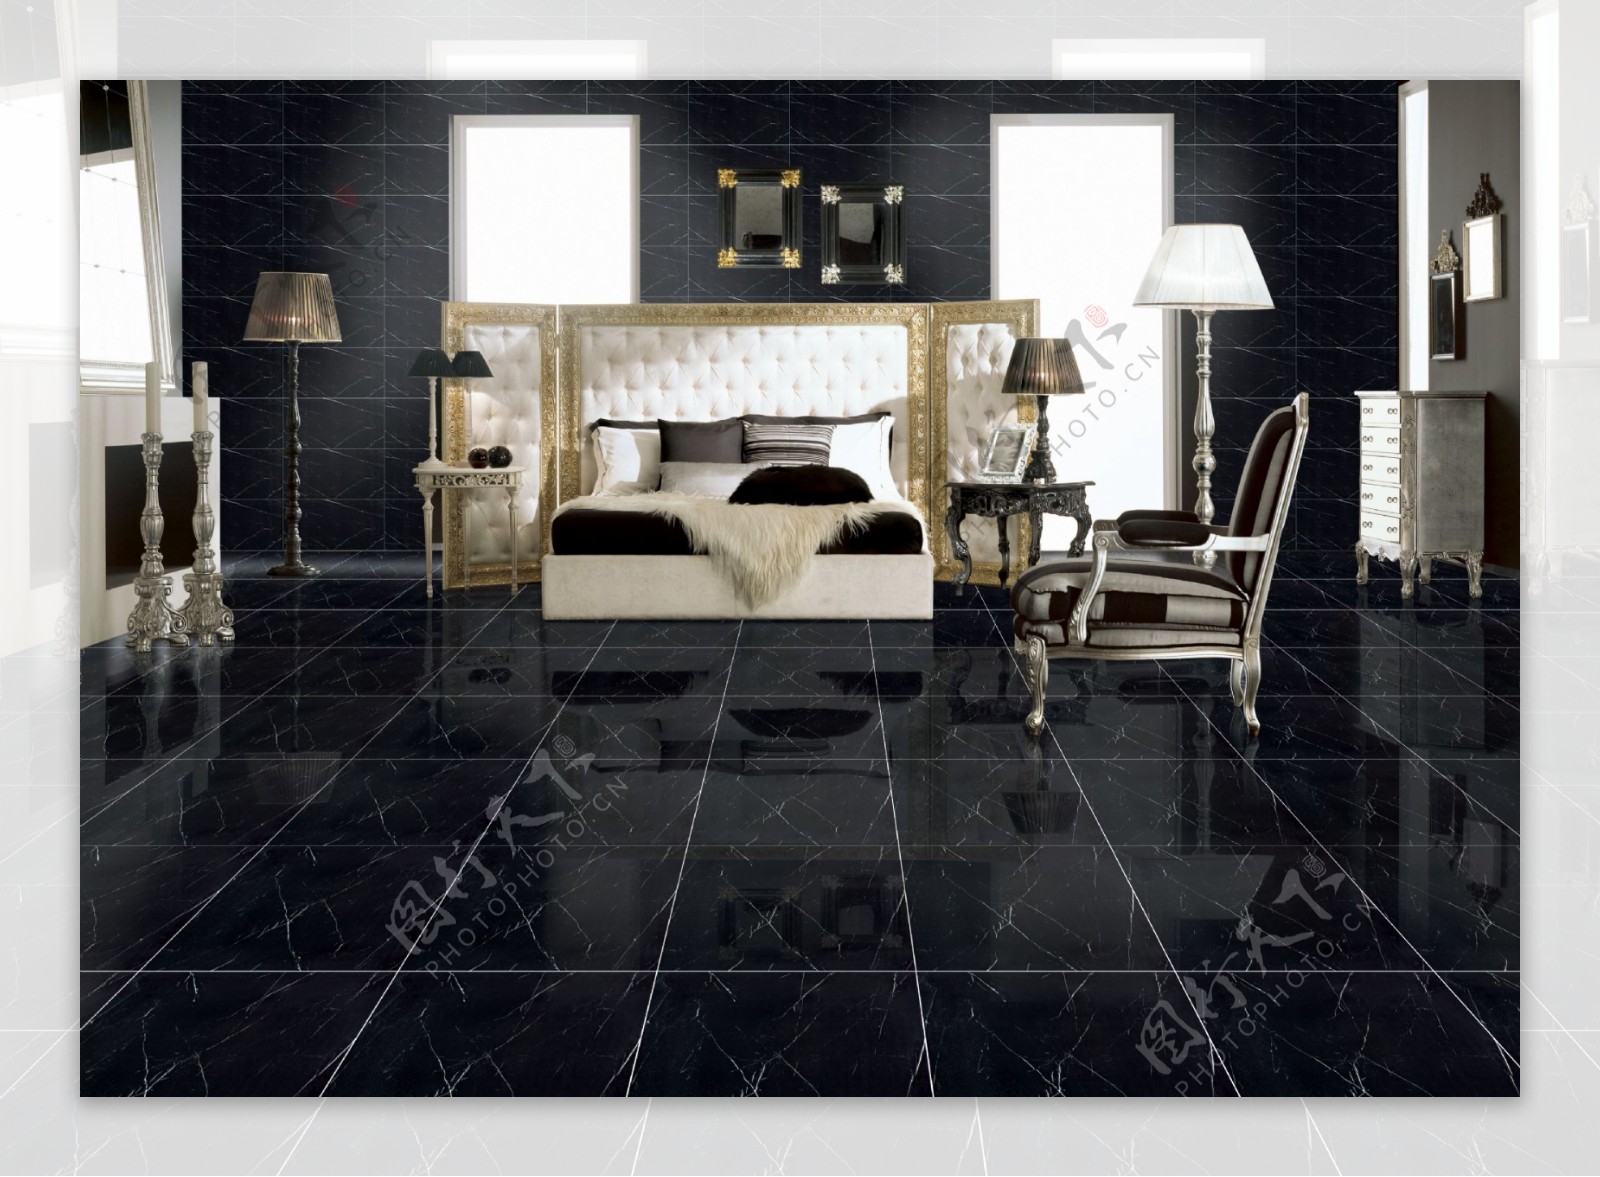 黑色磁砖效果图卧室图片